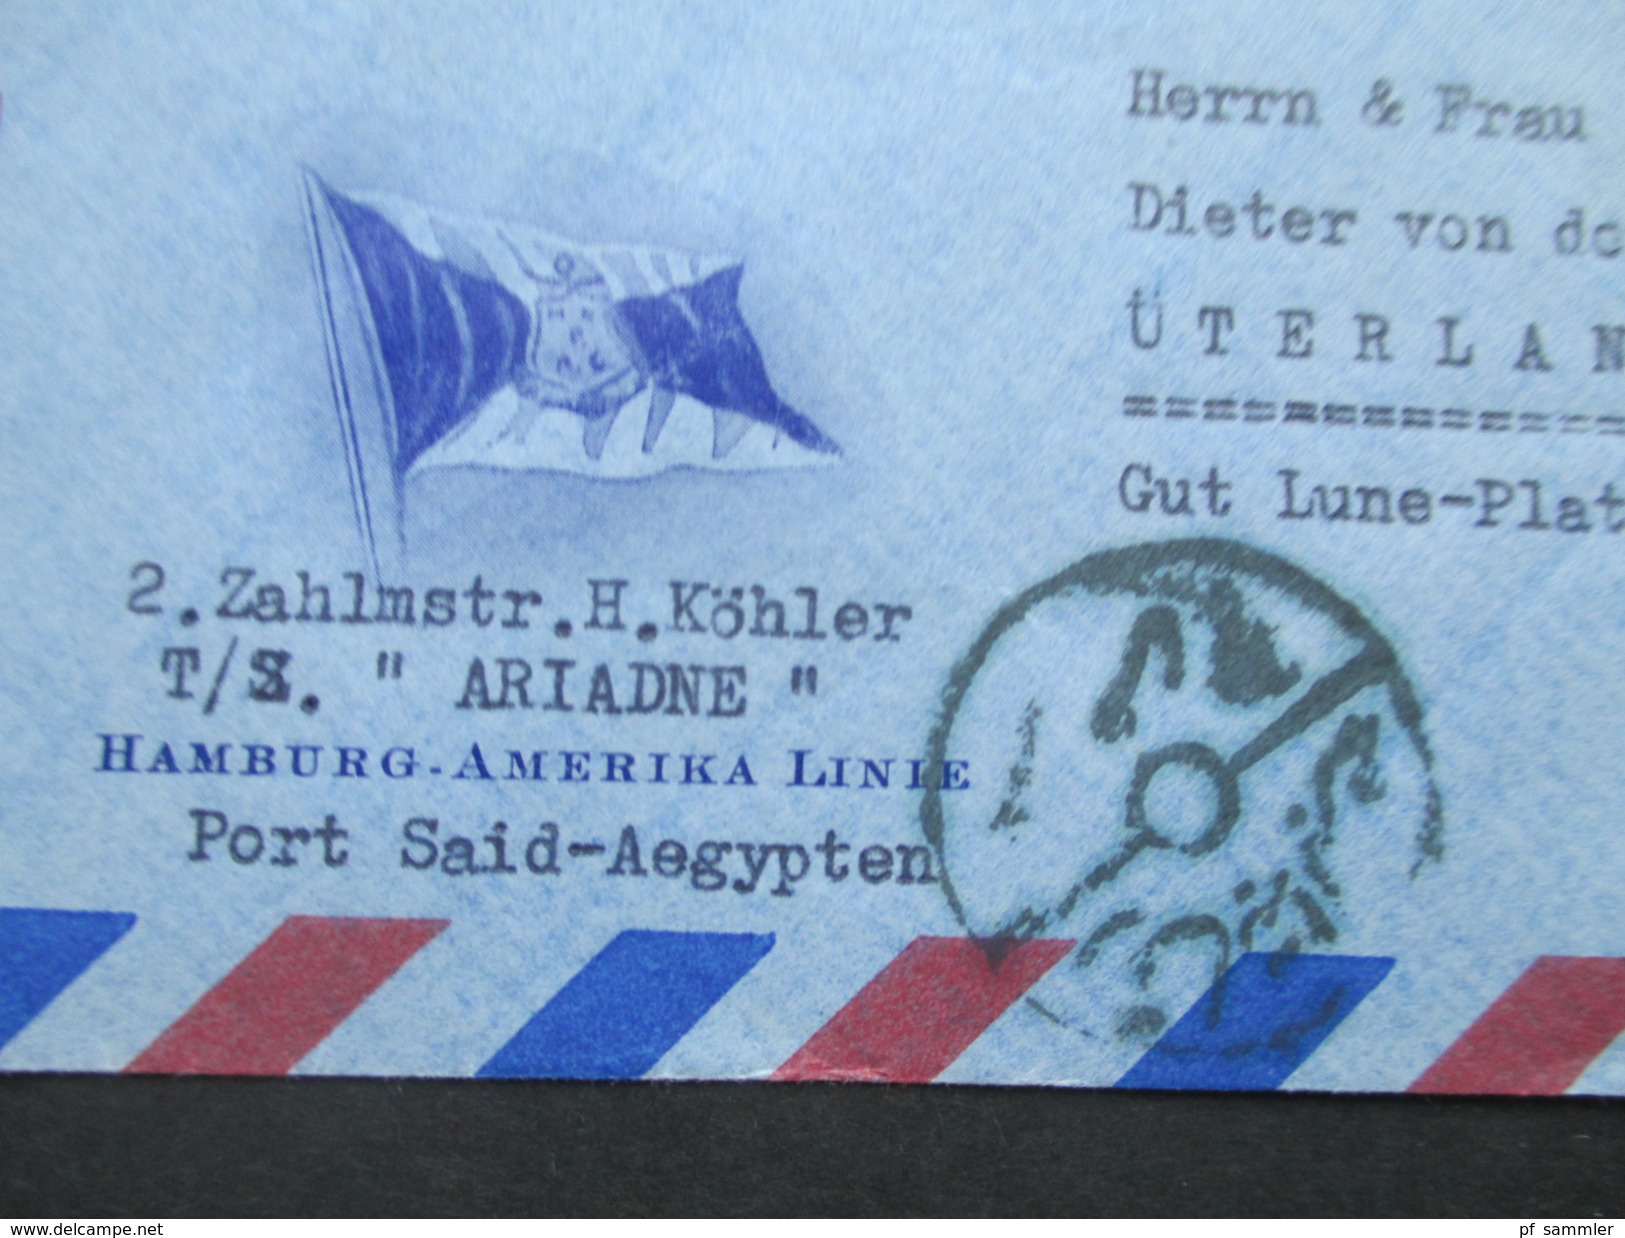 Ägypten 1950er Jahre Luftpostbrief / Schiffspost Hamburg - Amerika Linie. TS Ariadne. Nach Üterlande.Interessanter Beleg - Cartas & Documentos